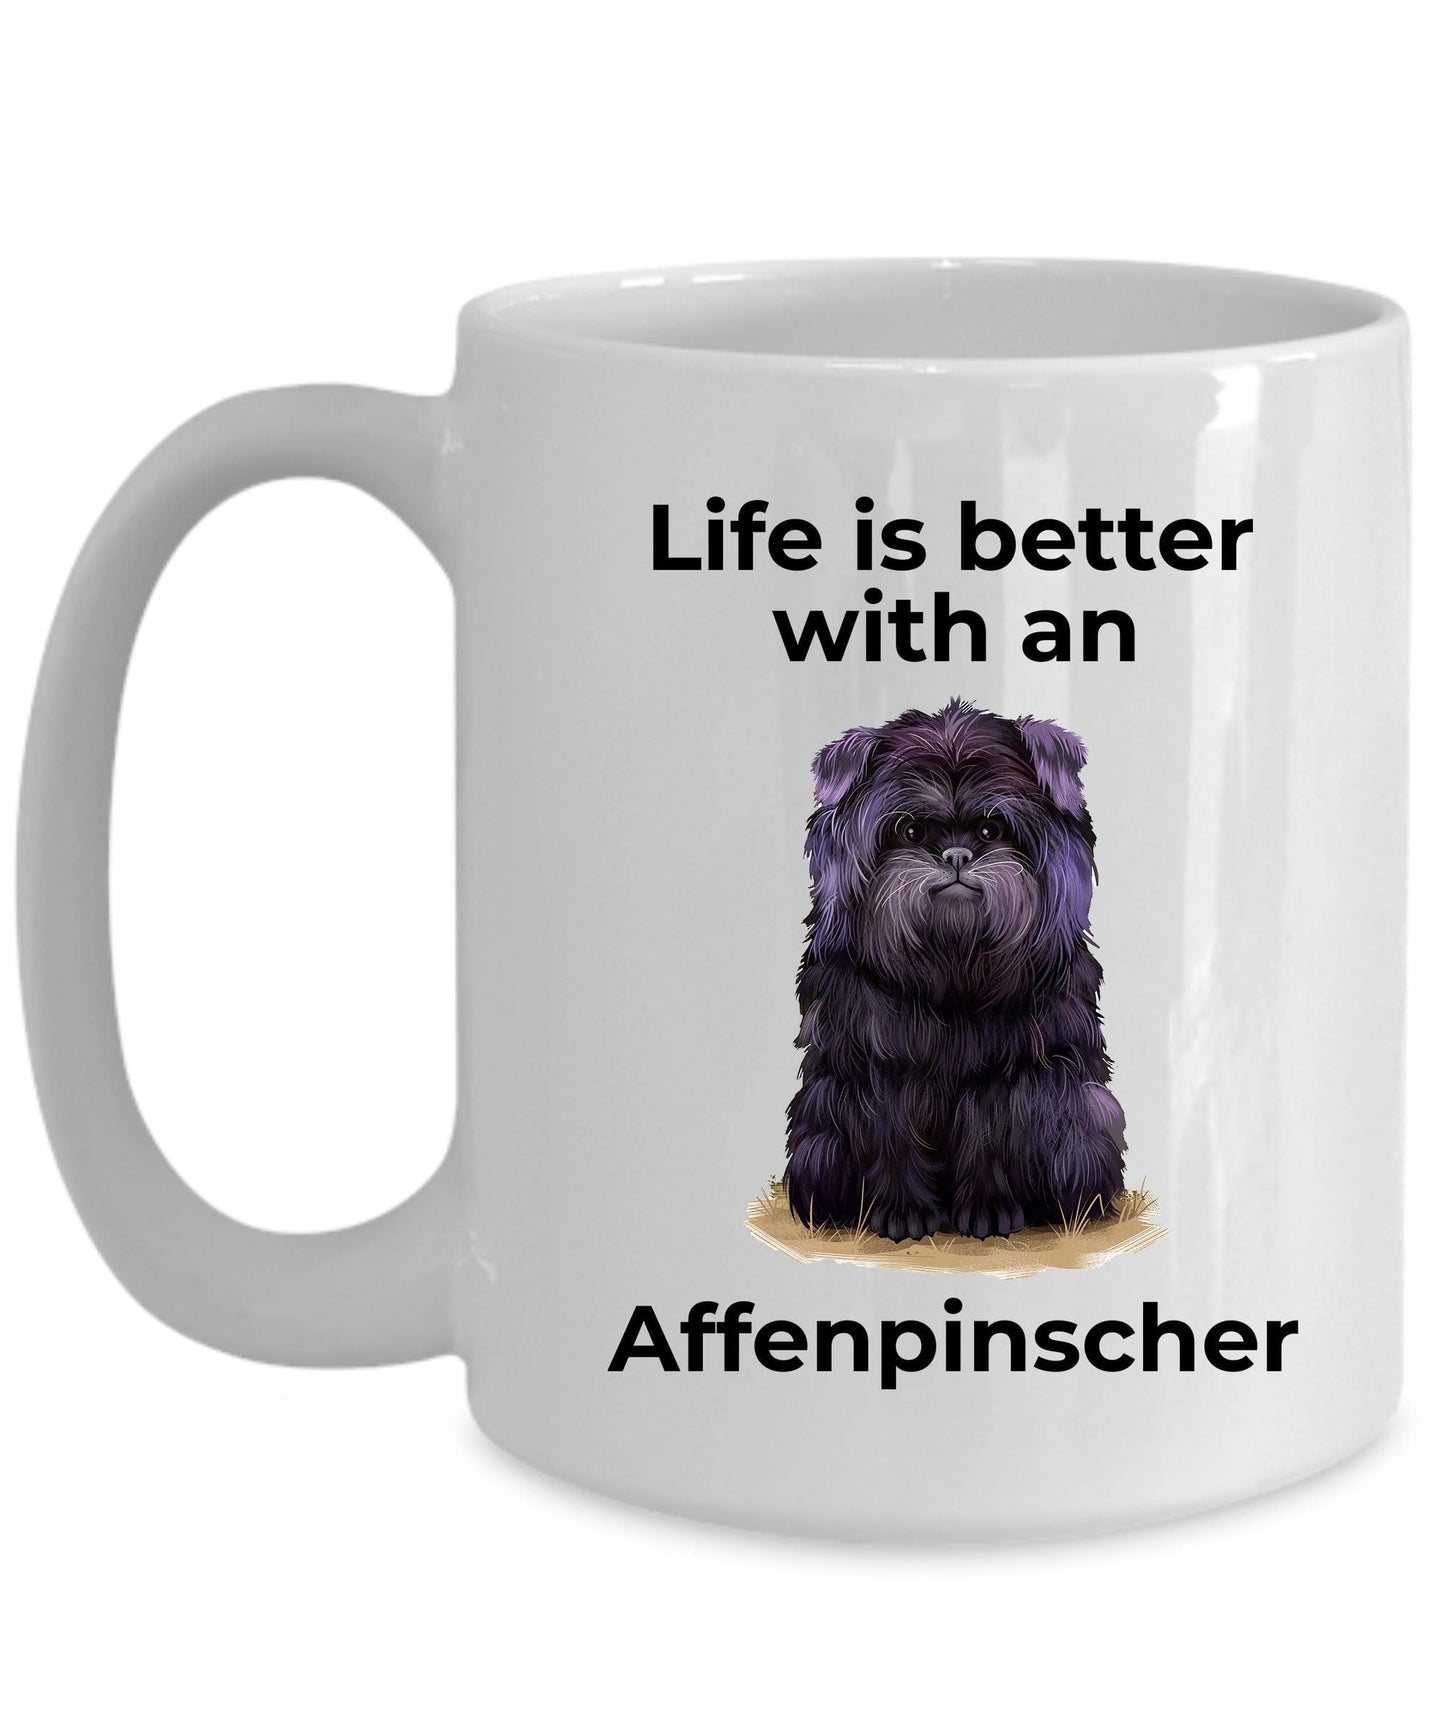 Affenpinscher Dog Coffee Mug - Life is better with an Affenpinscher